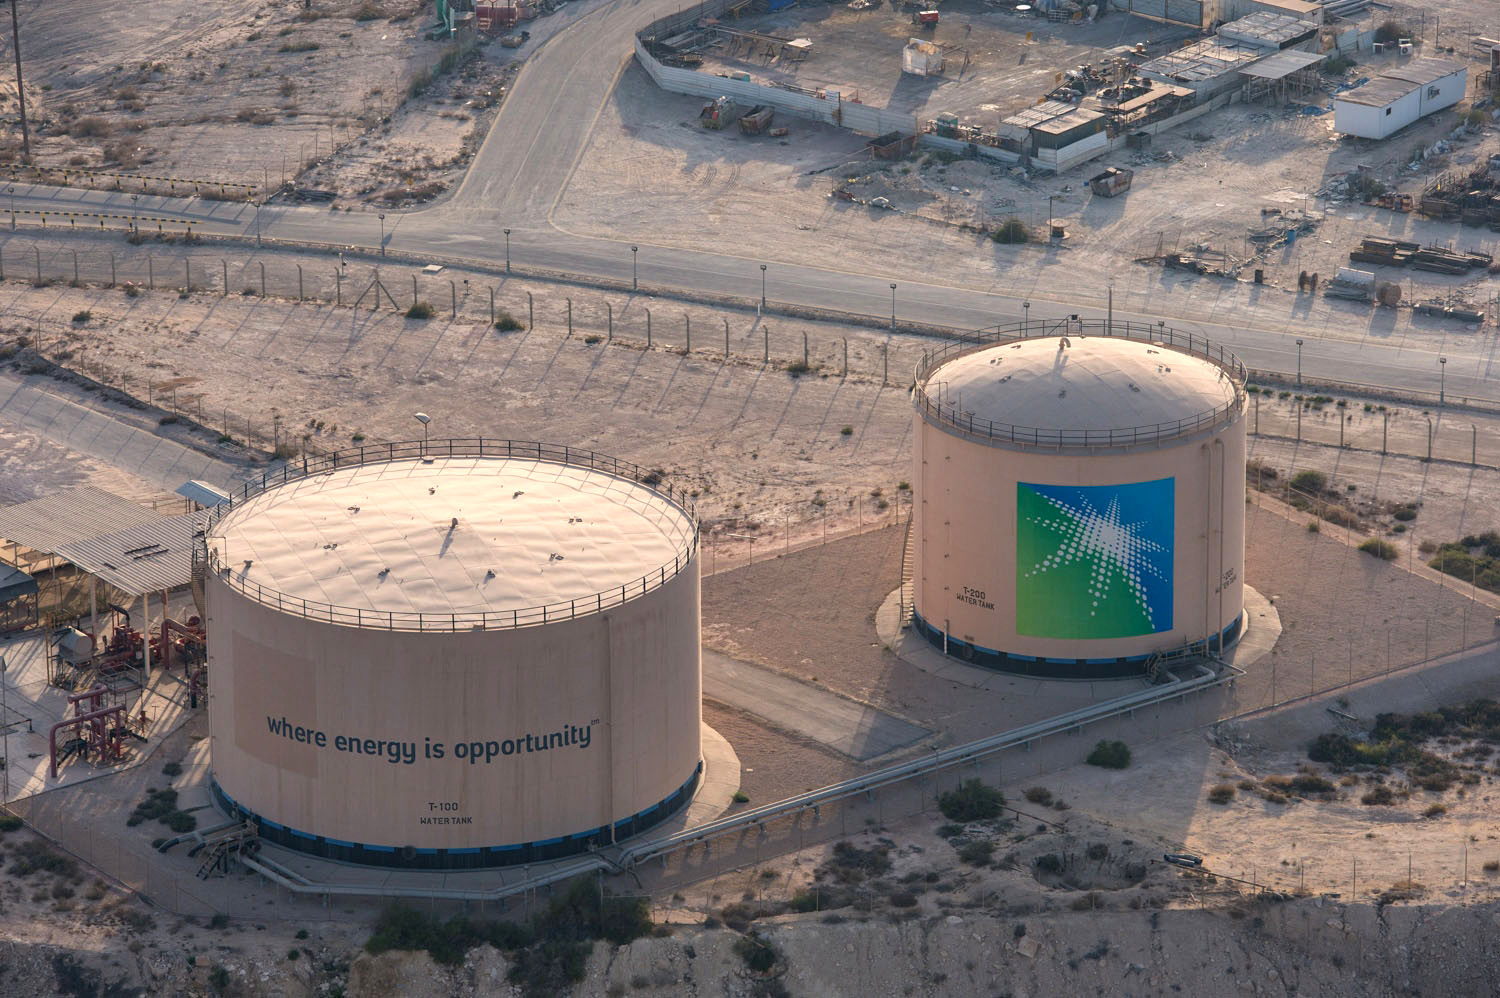 Szaúd-Arábia, a világ egyik legnagyobb olajexportőre, karbonsemlegességet ígért 2060-ra